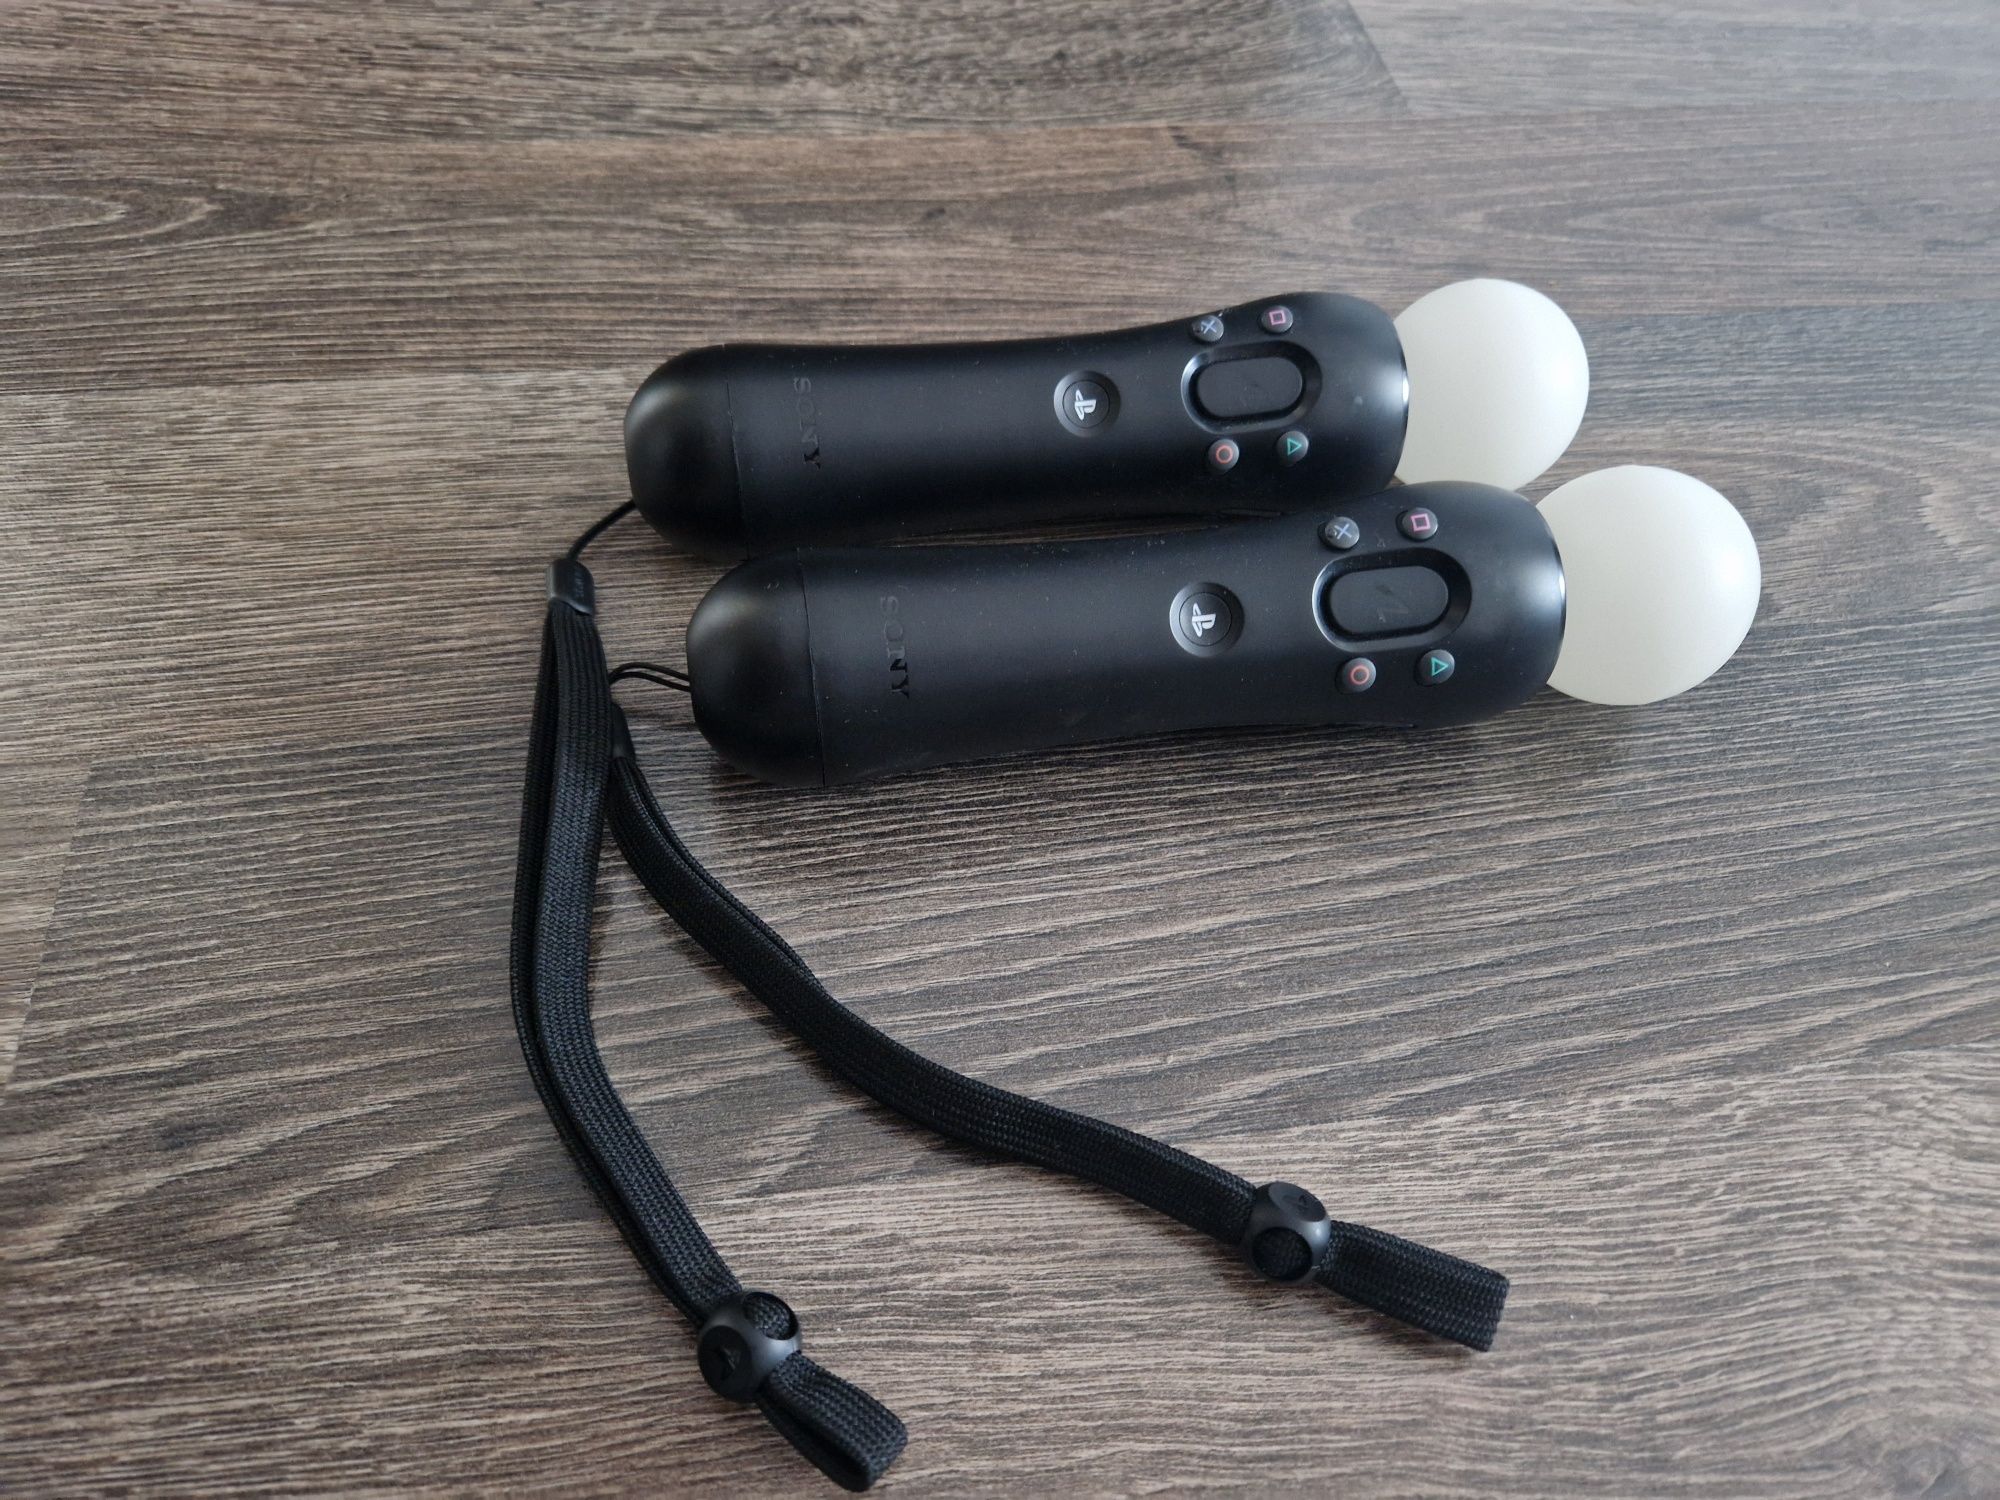 Kit VR headset, motion controllers și cameră (întreg sau individual)